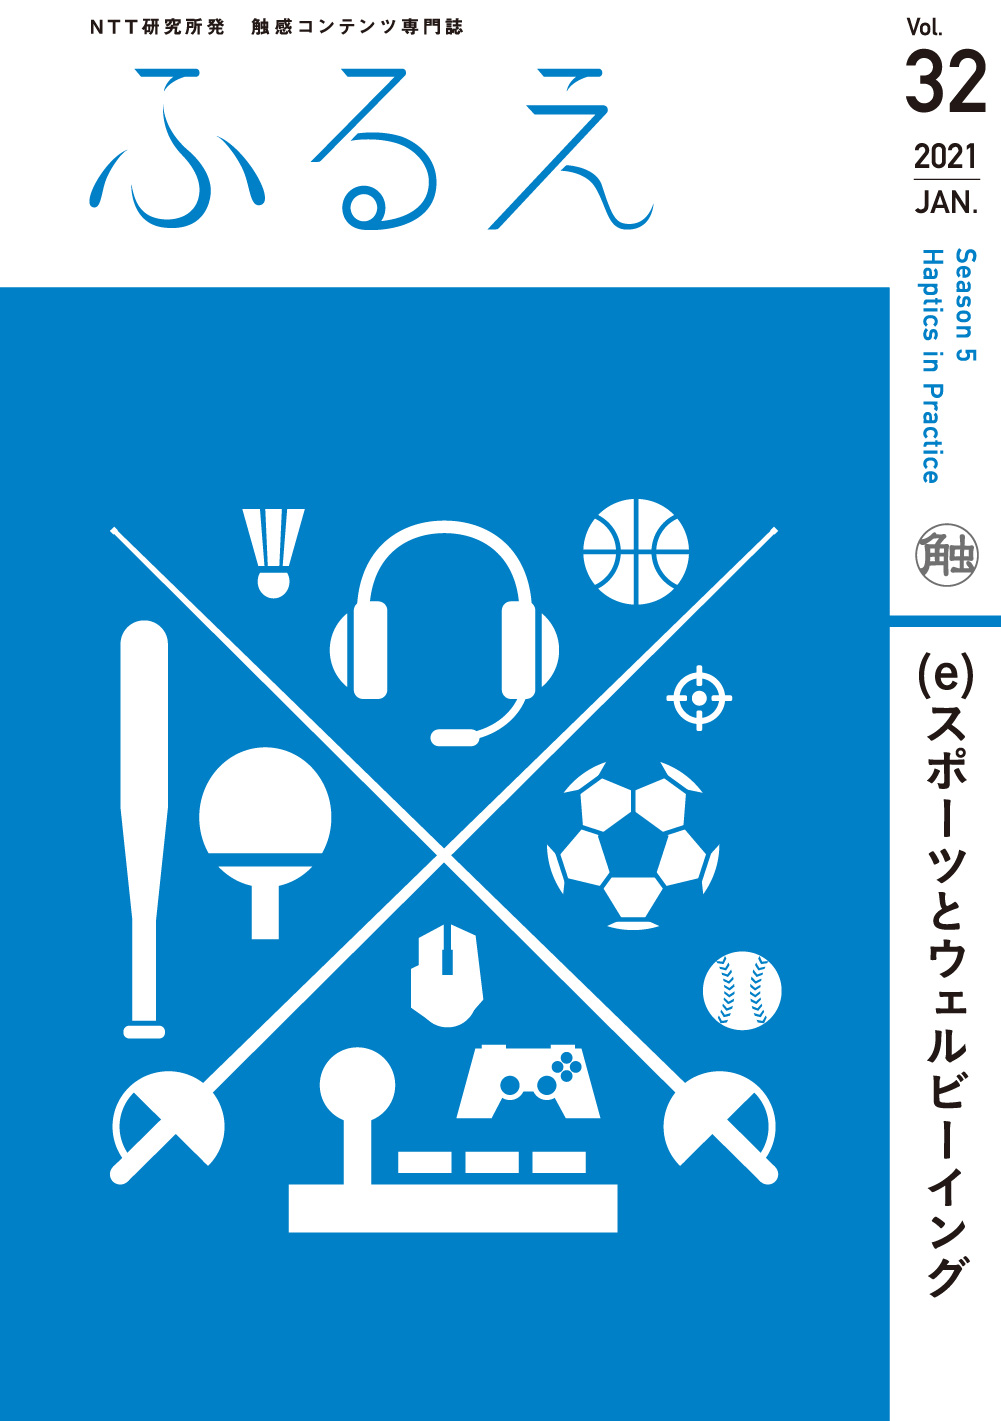 触感コンテンツ専門誌 ふるえ Vol.32 スポーツとウェルビーイング